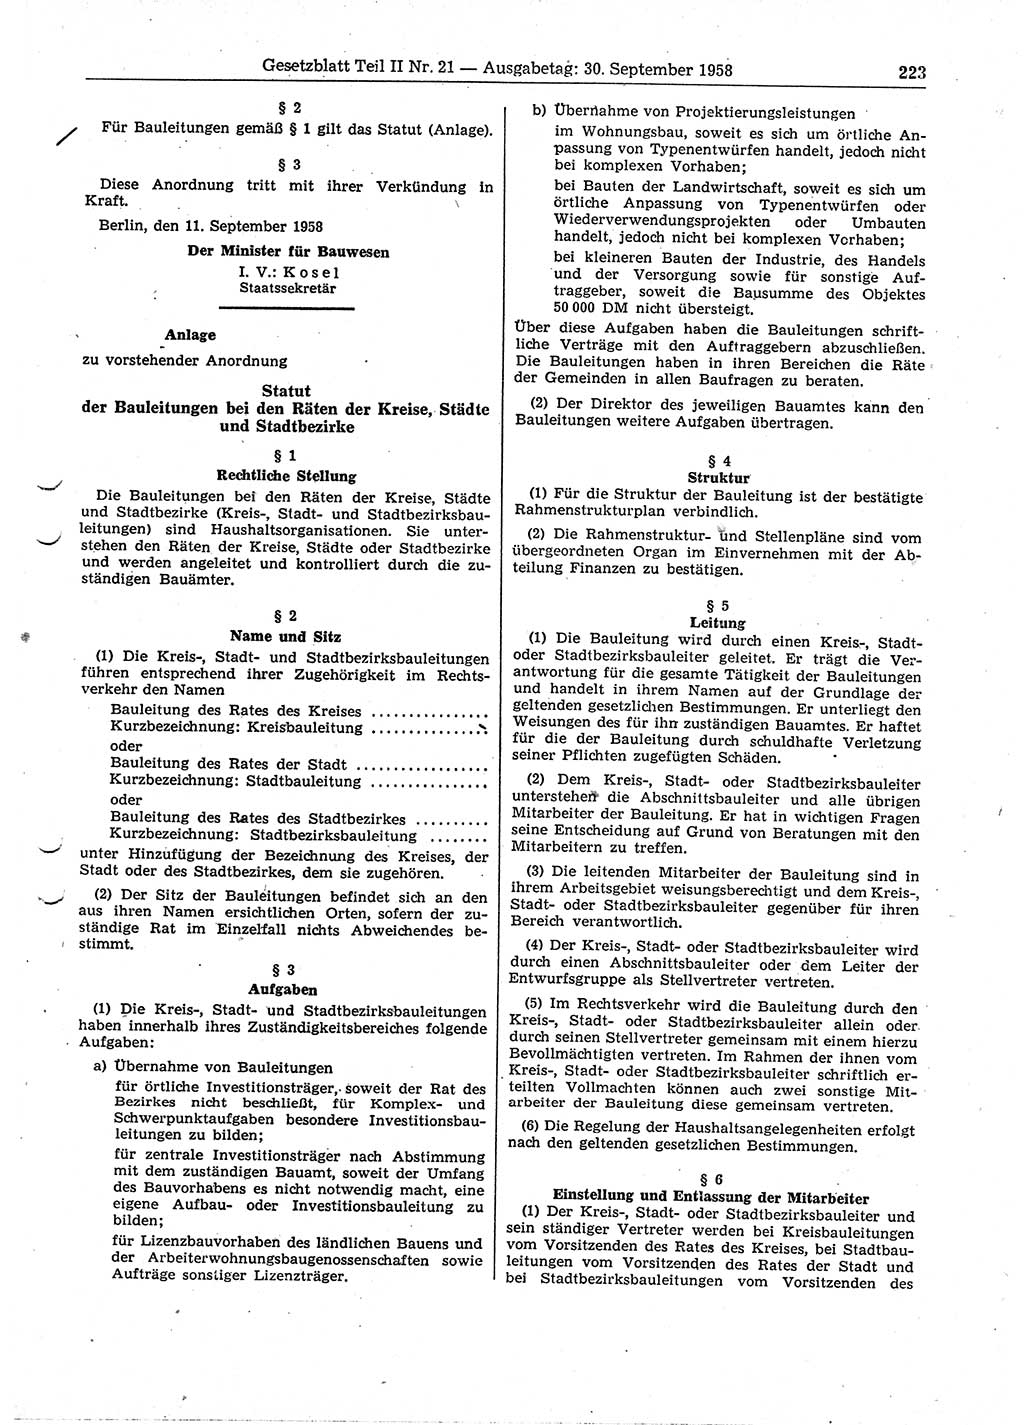 Gesetzblatt (GBl.) der Deutschen Demokratischen Republik (DDR) Teil ⅠⅠ 1958, Seite 223 (GBl. DDR ⅠⅠ 1958, S. 223)